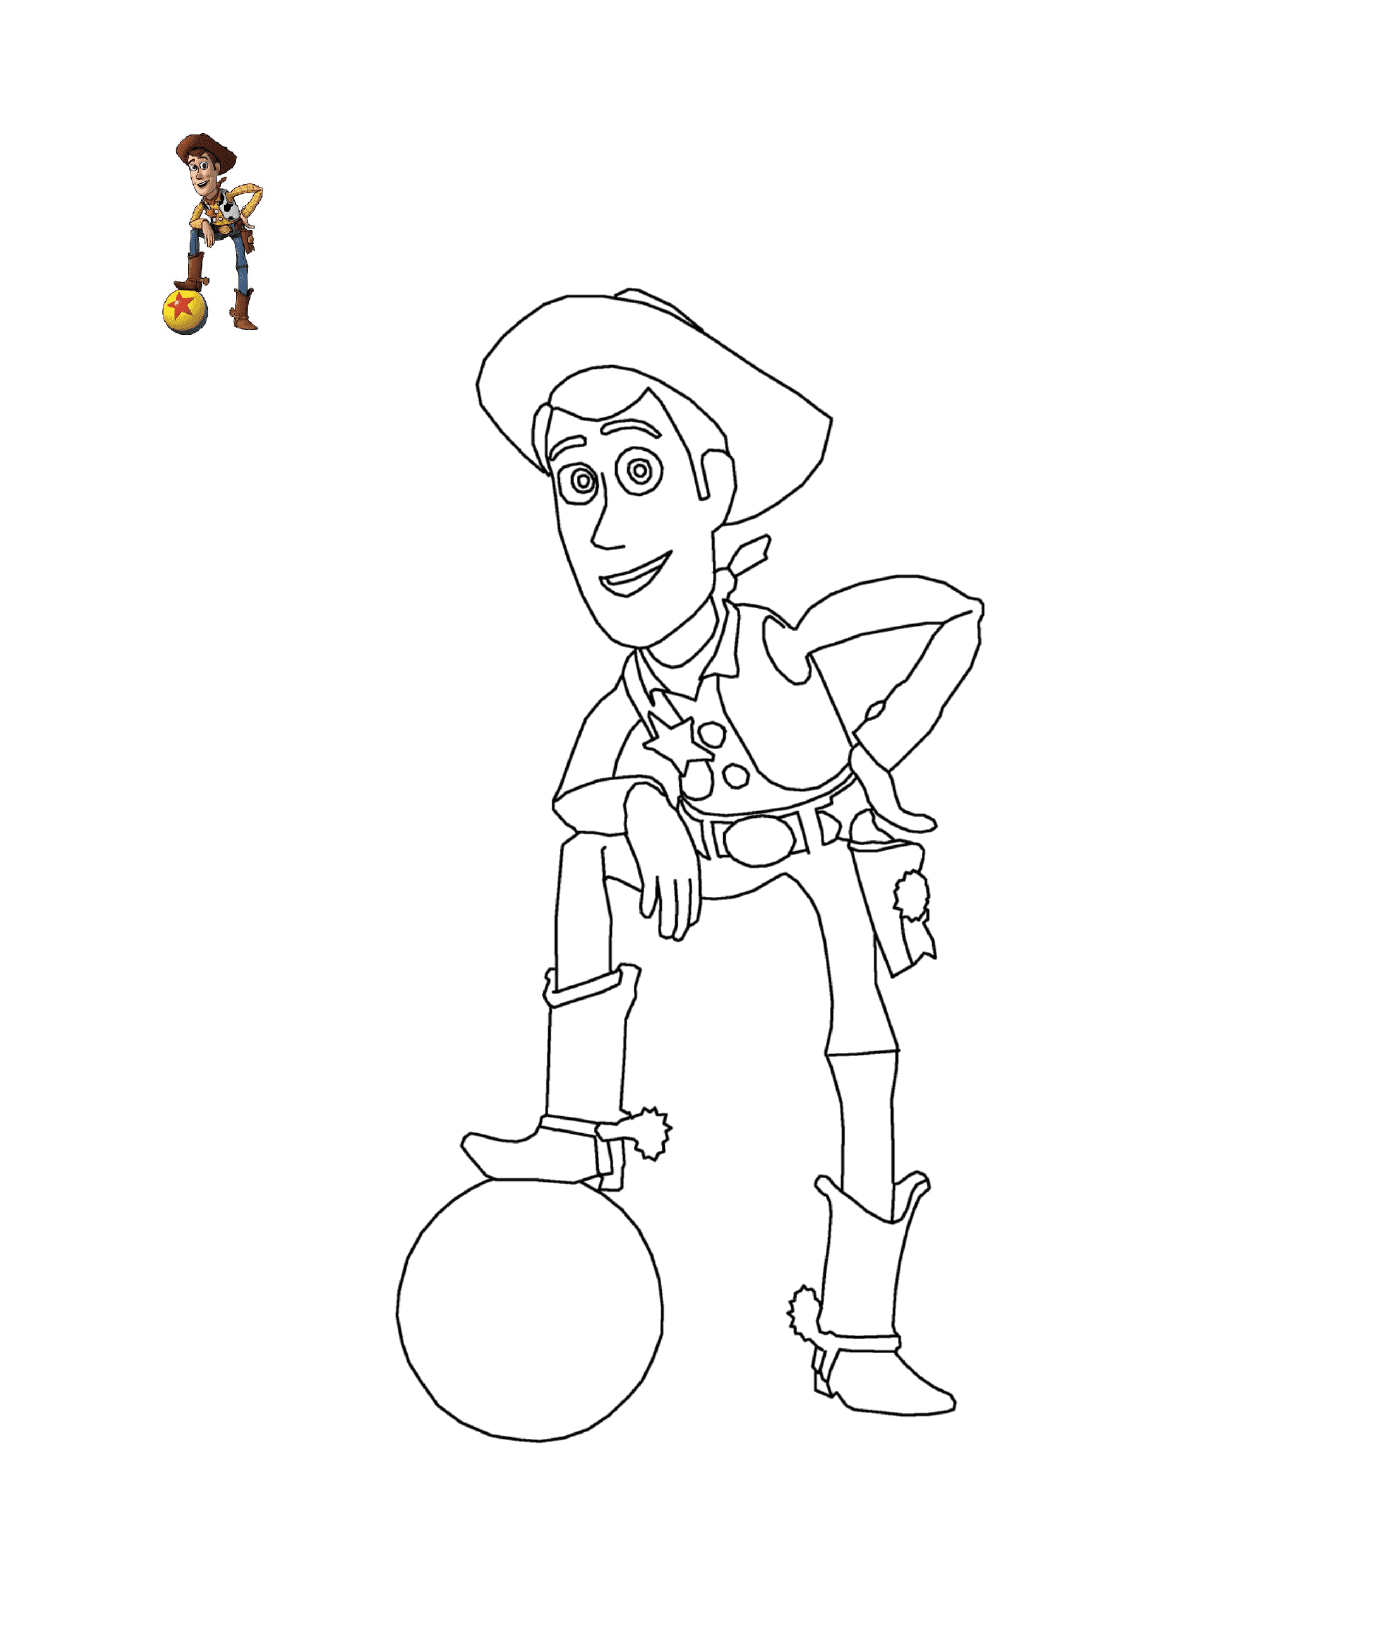  Sheriff Woody de Disney Toy Story 